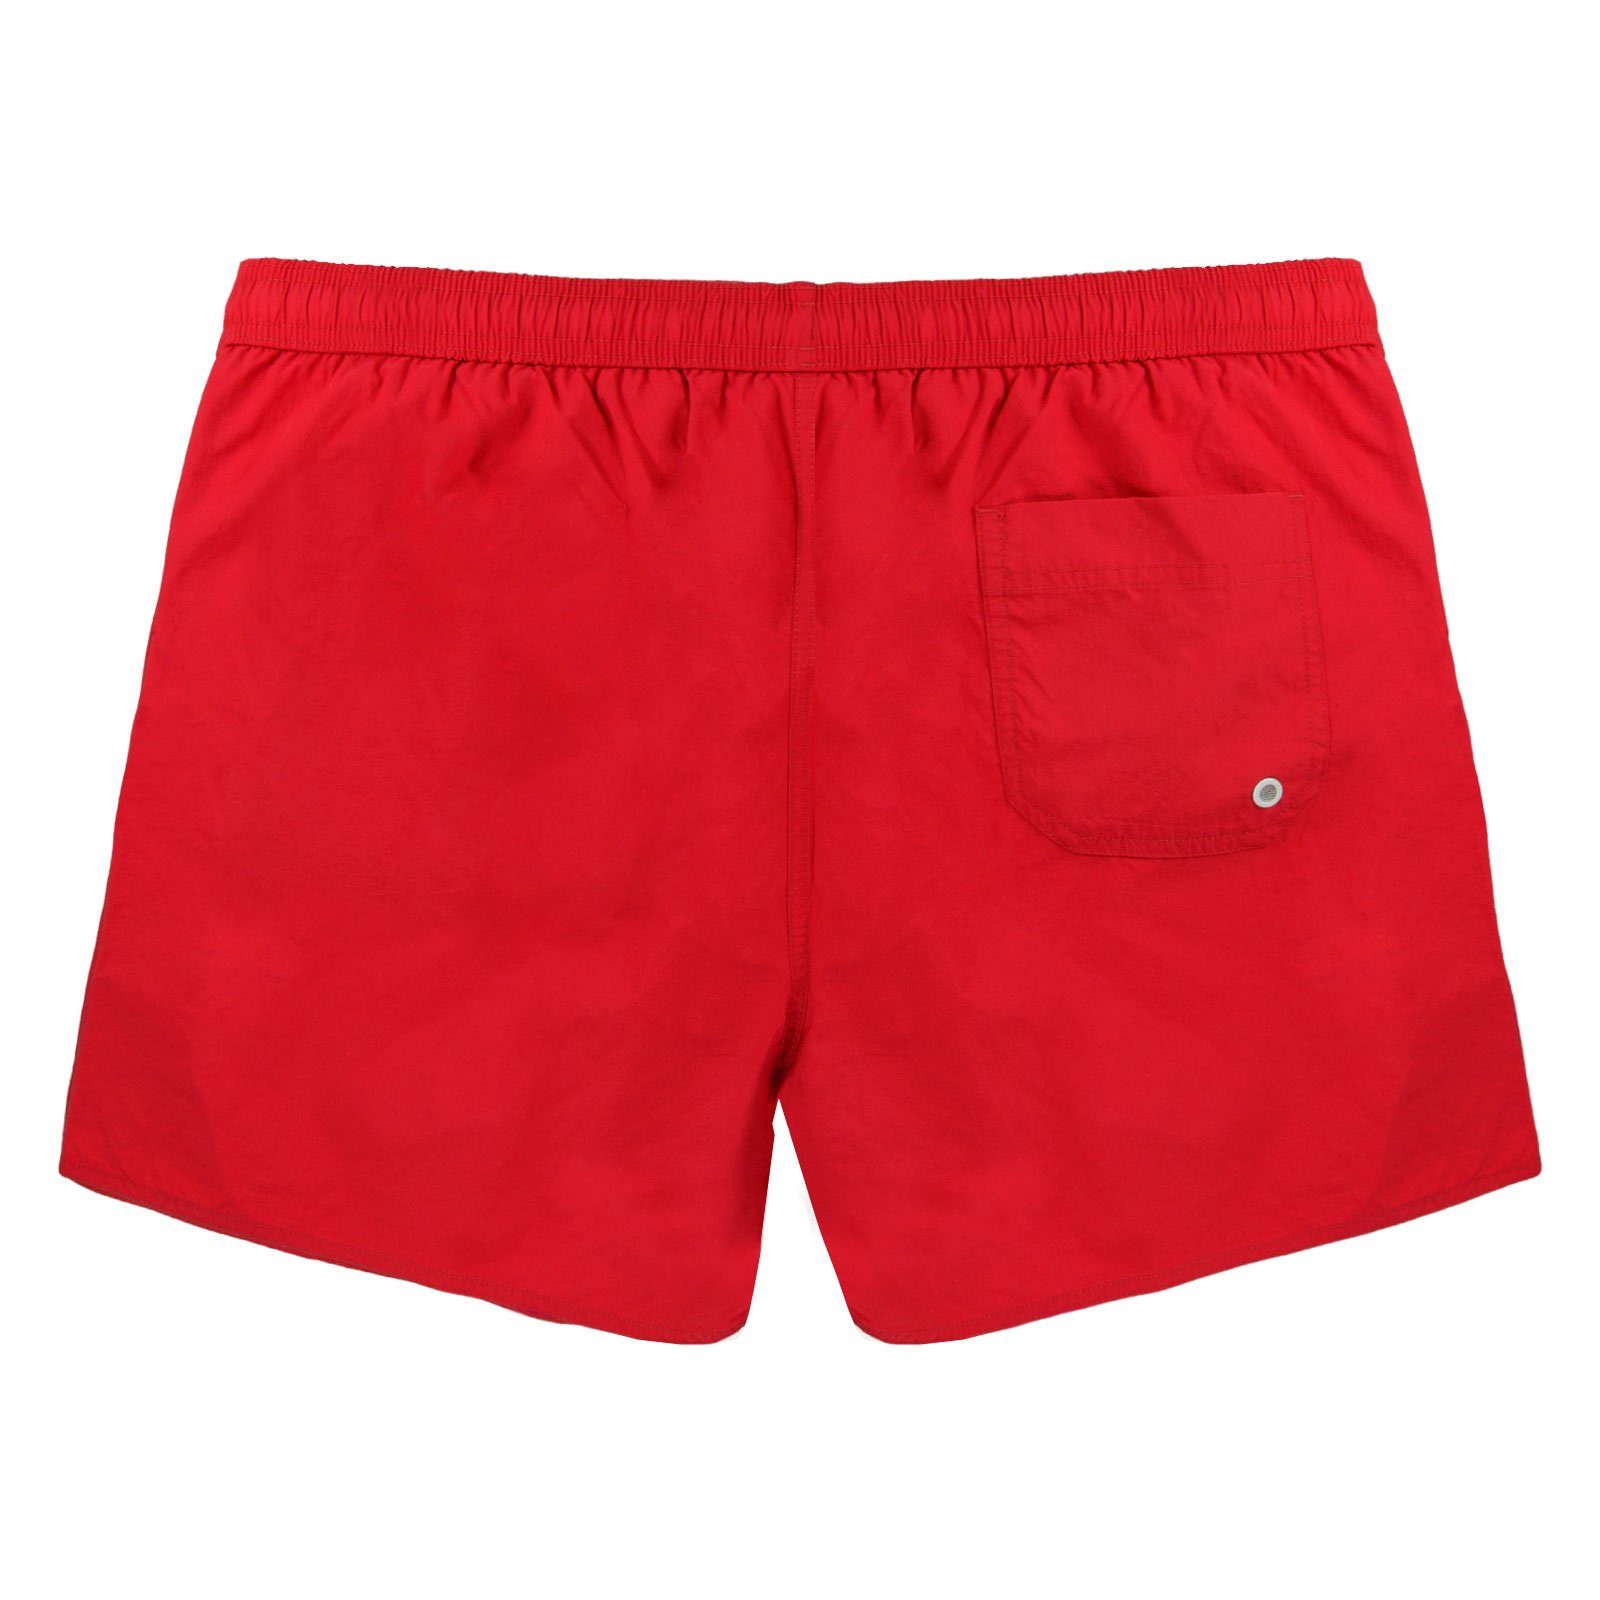 Beachwear 00173 Bein Emporio ruby Armani linken mit kleinen Boxer-Badehose red Boxer Markenlogo Mid am